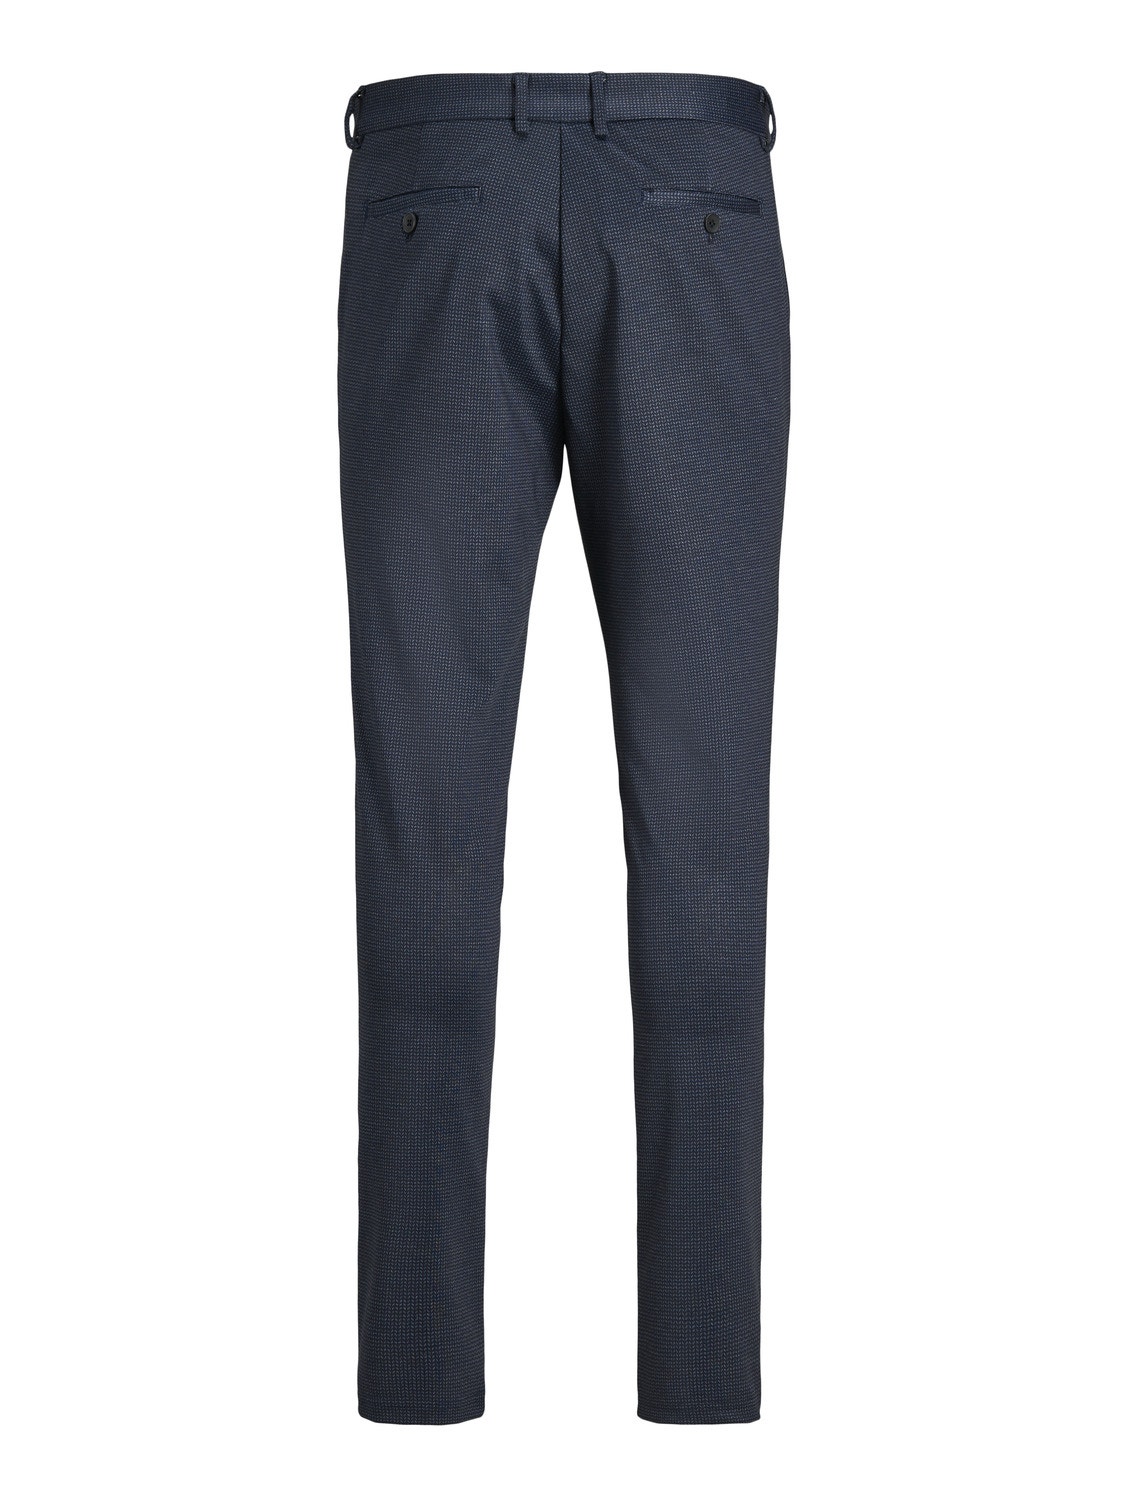 Jack & Jones Παντελόνι Slim Fit Chinos -Navy Blazer - 12175009